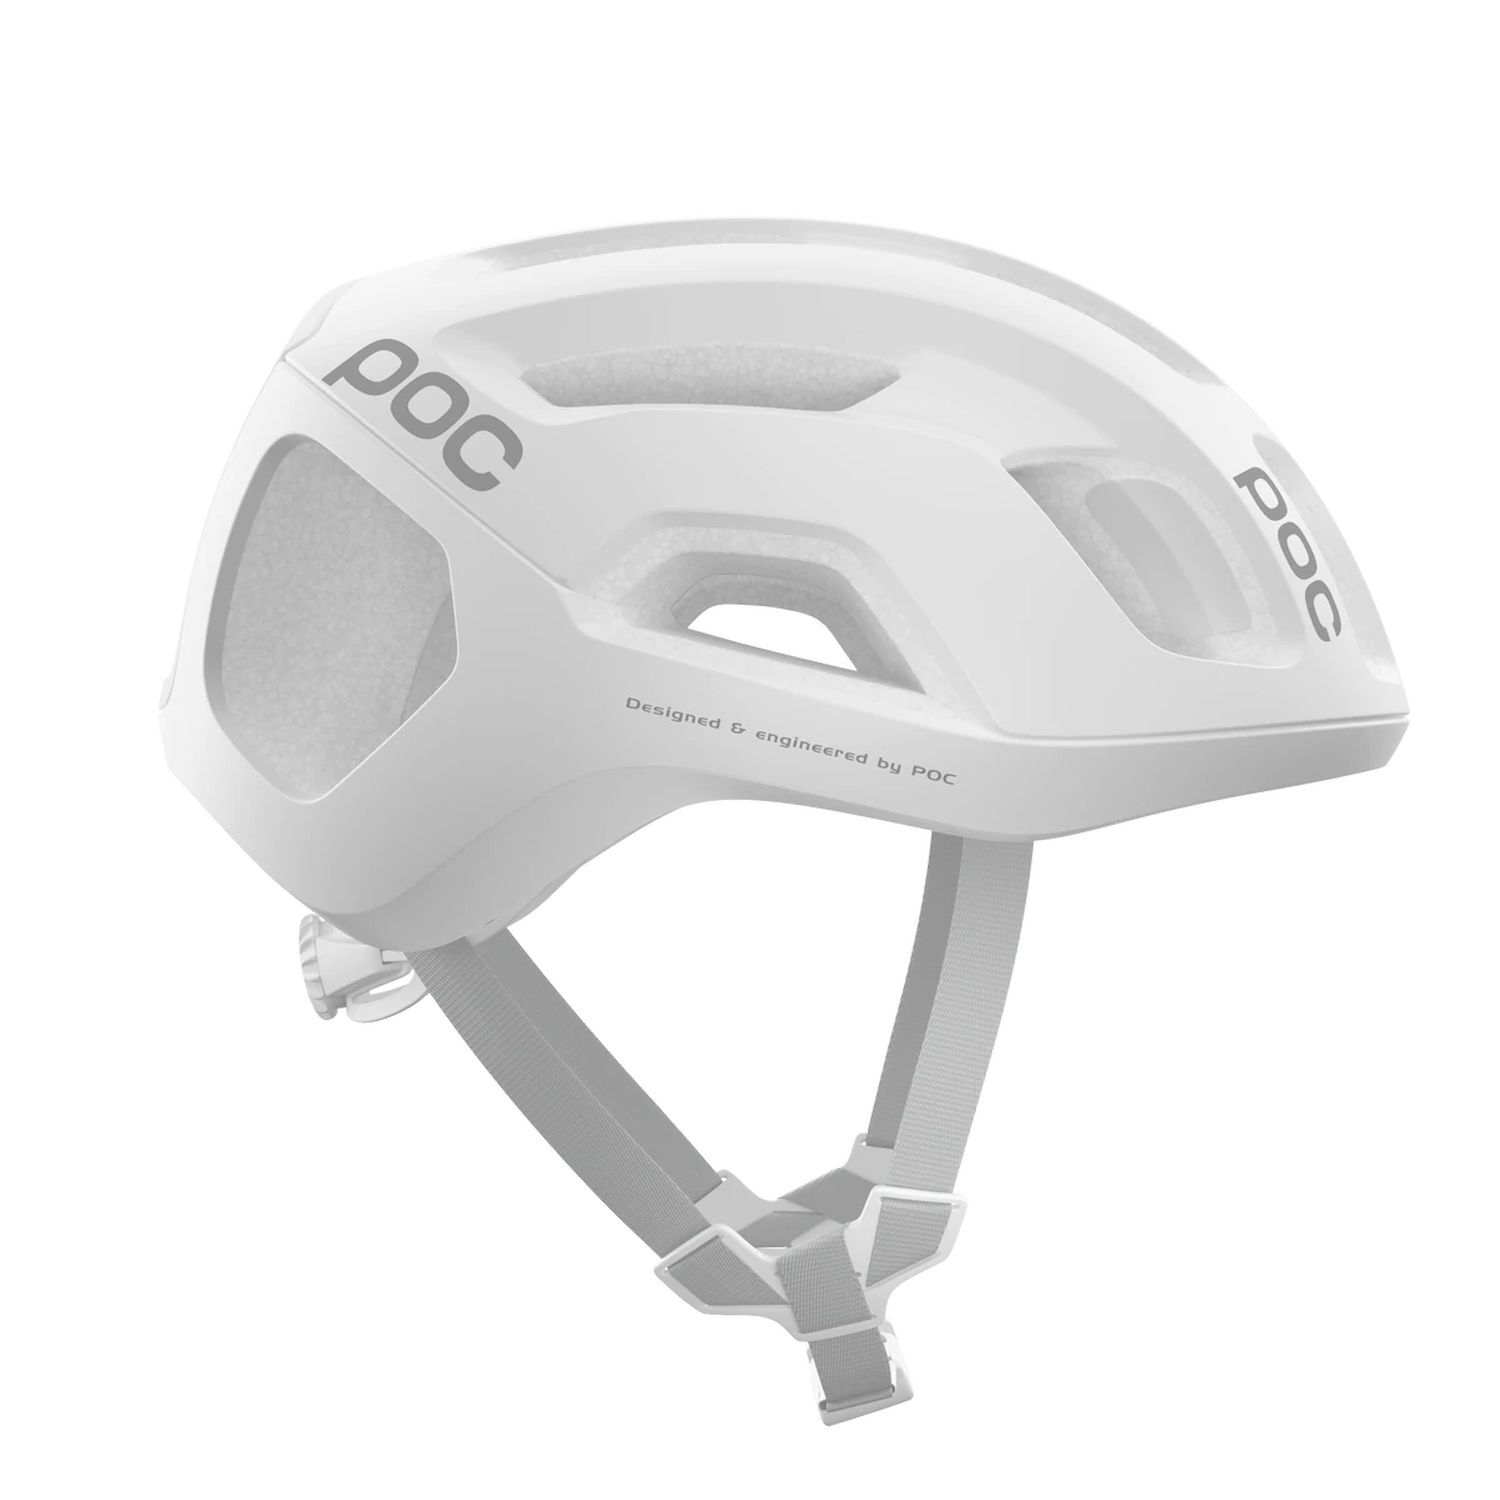 Poc Ventral Air MIPS - Cyklistická helma | Hardloop